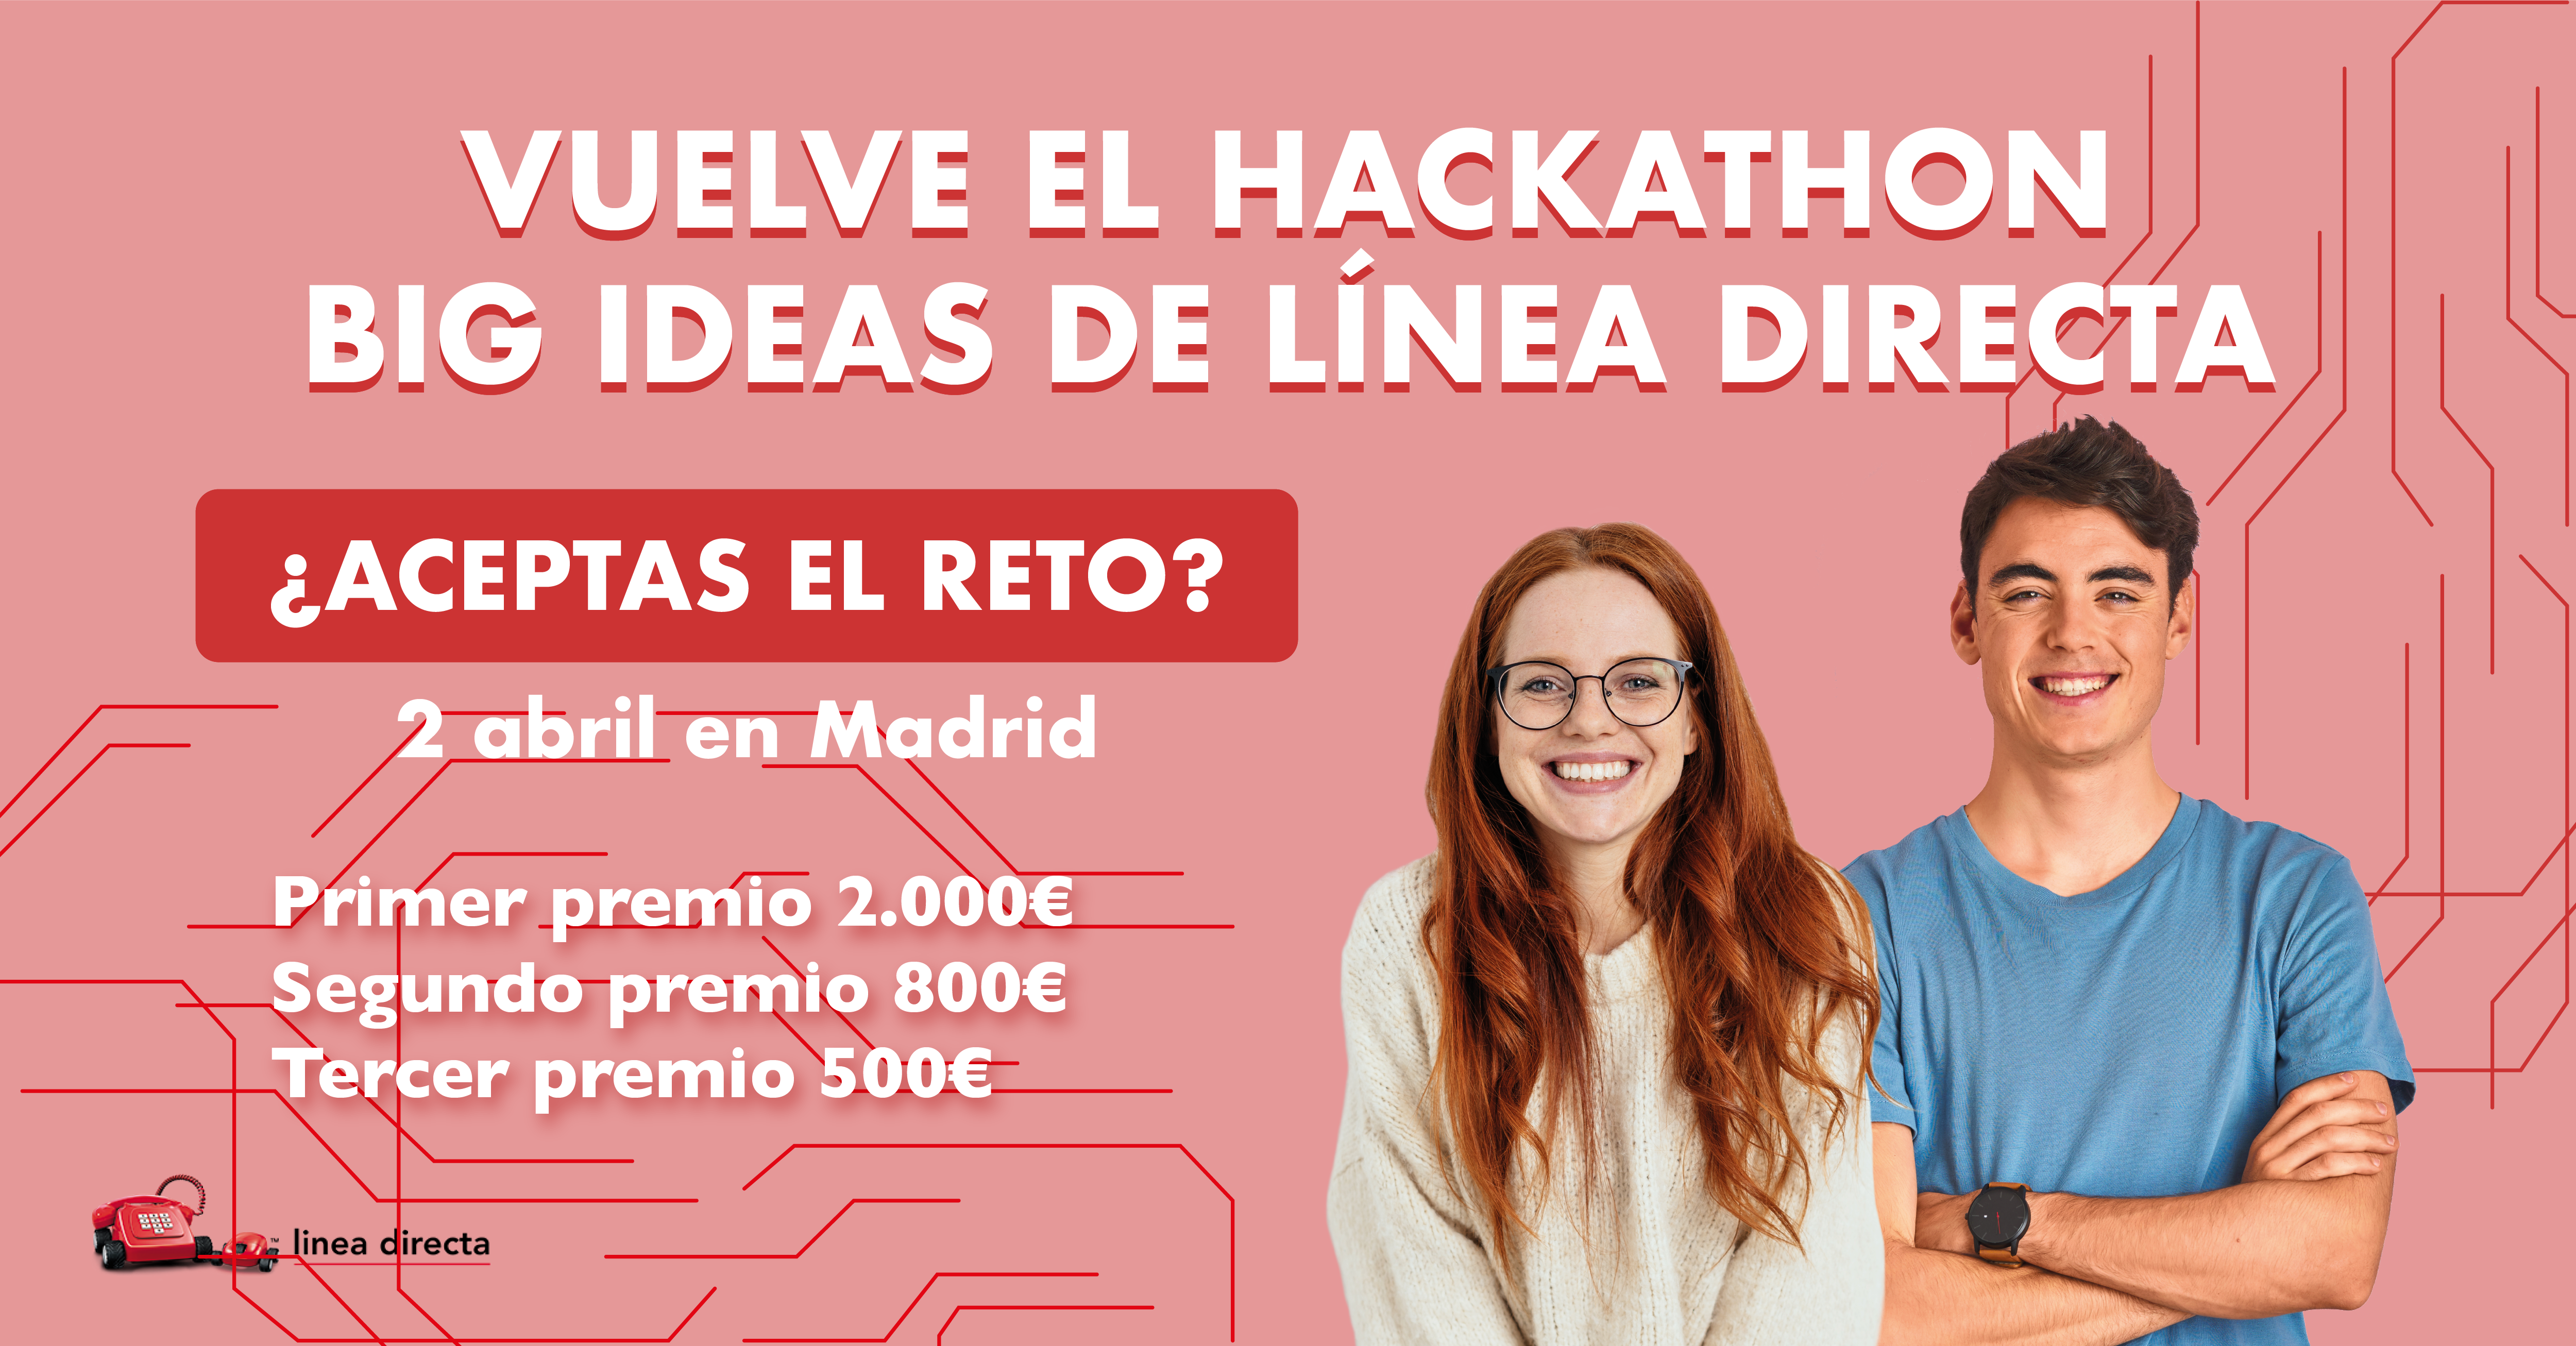 Vuelve el hackathon Big Ideas de Línea Directa. ¿Aceptas el reto? 2 de abril. Primer premio 2000€, segundo premio 800€ y tercer premio 500€